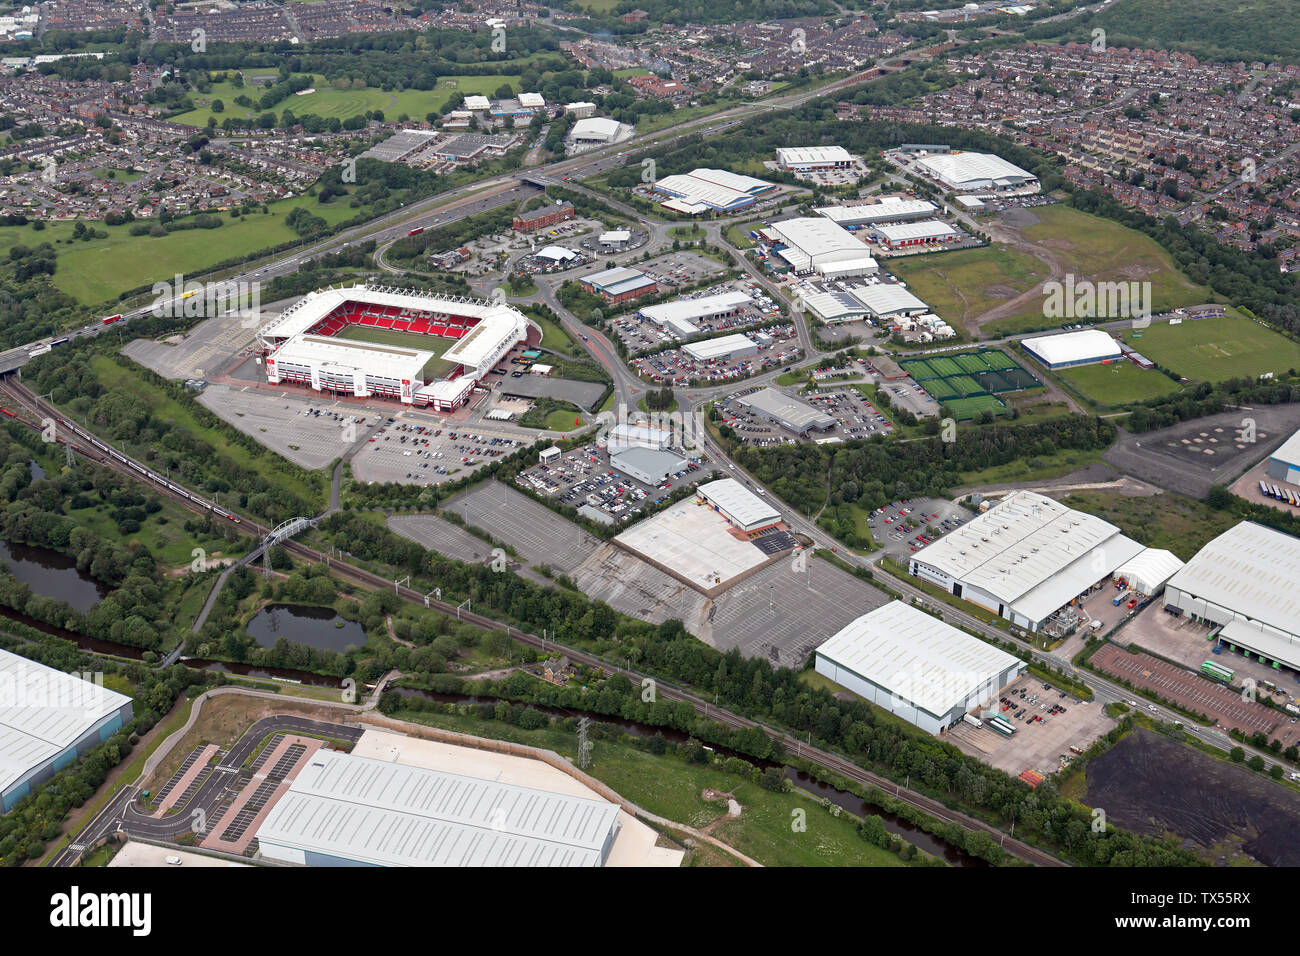 Vista aérea de Stoke mostrando la carretera A50, apuesta 365 de un estadio de fútbol y diversas unidades de negocios e industriales, Staffordshire, REINO UNIDO Foto de stock